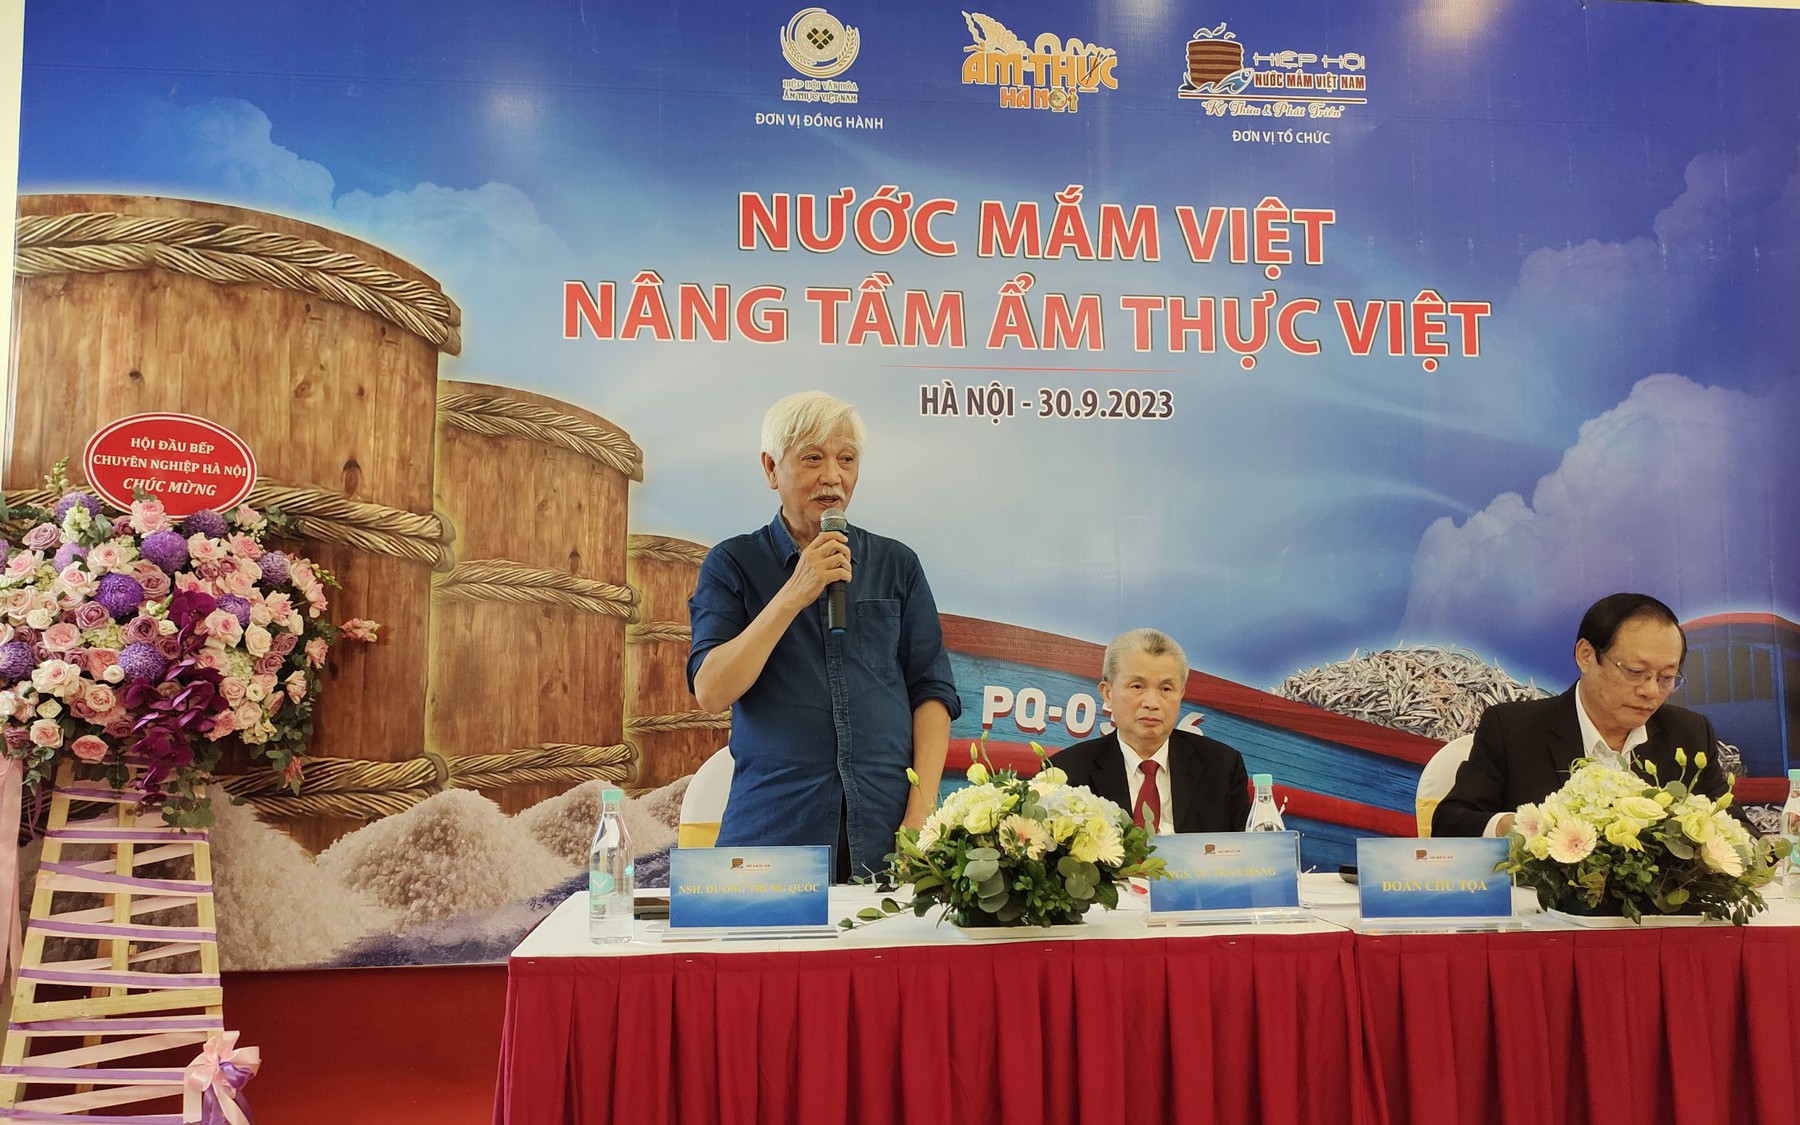 40% nhà hàng Tây dùng nước mắm Việt, đề nghị công nhận nước mắm là di sản văn hoá Việt Nam 